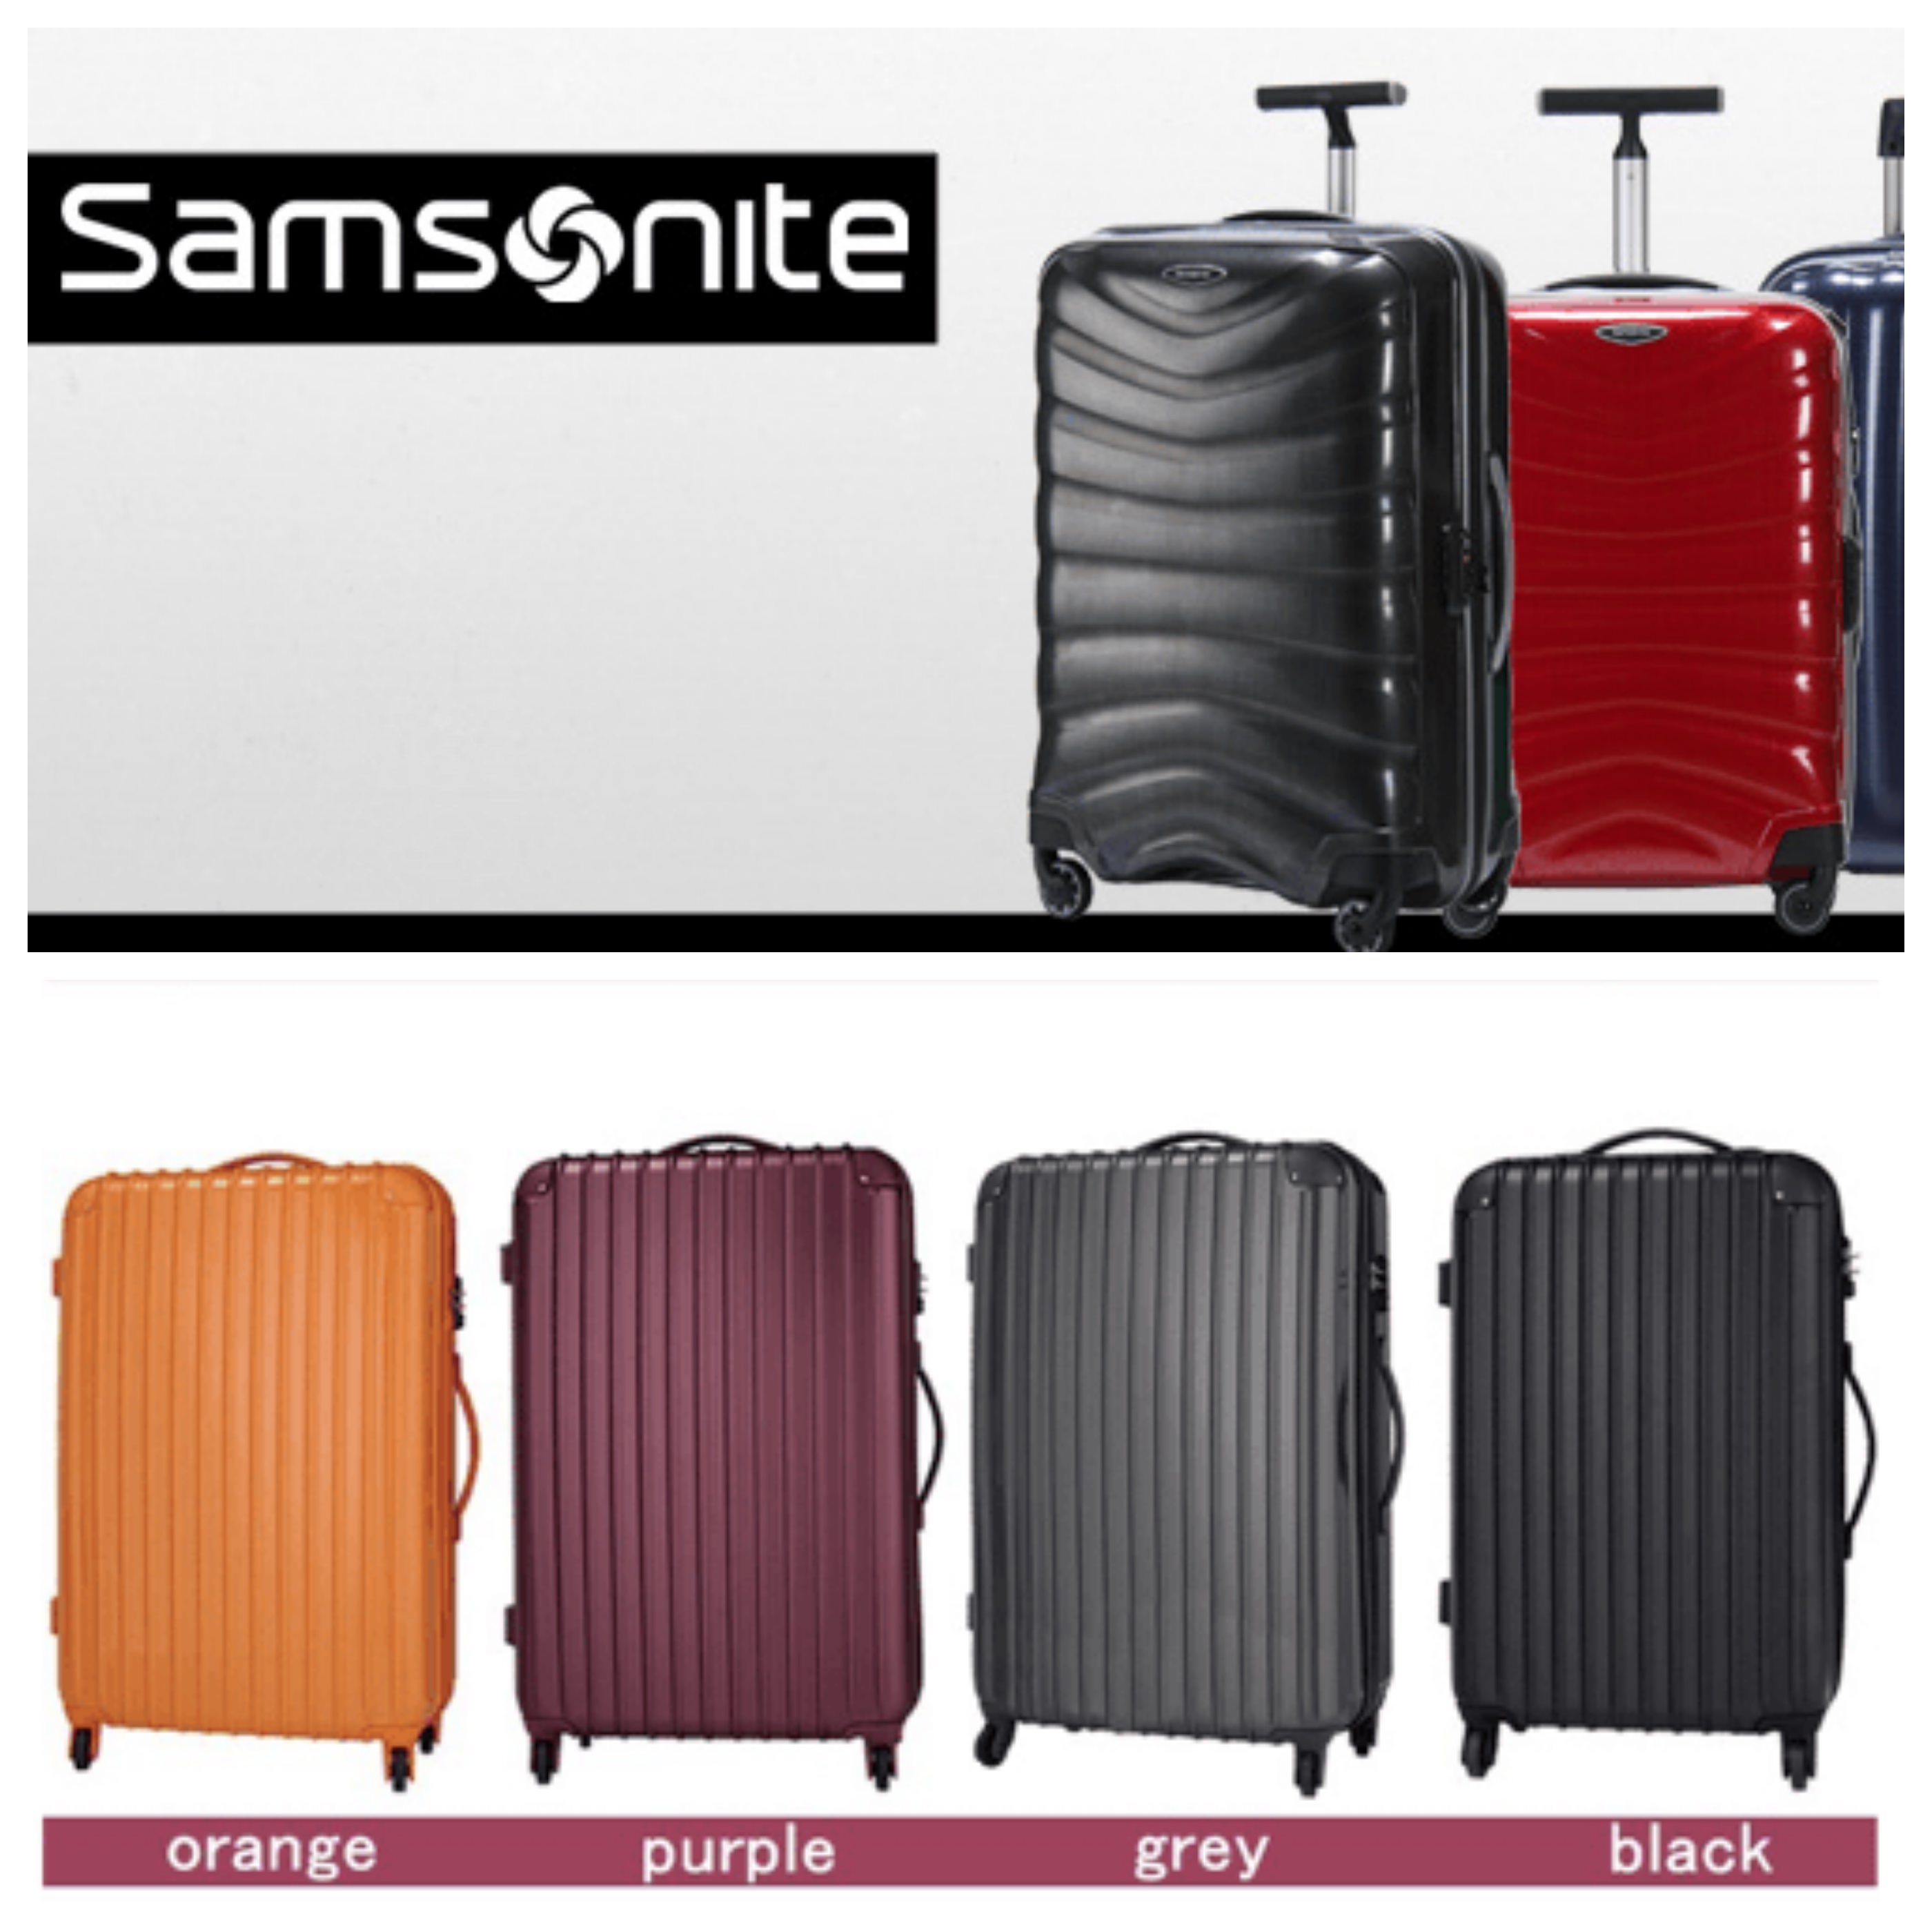 海外旅行用スーツケースのレンタルならDMMがおすすめ。返却が本当に楽。 | タイ一択